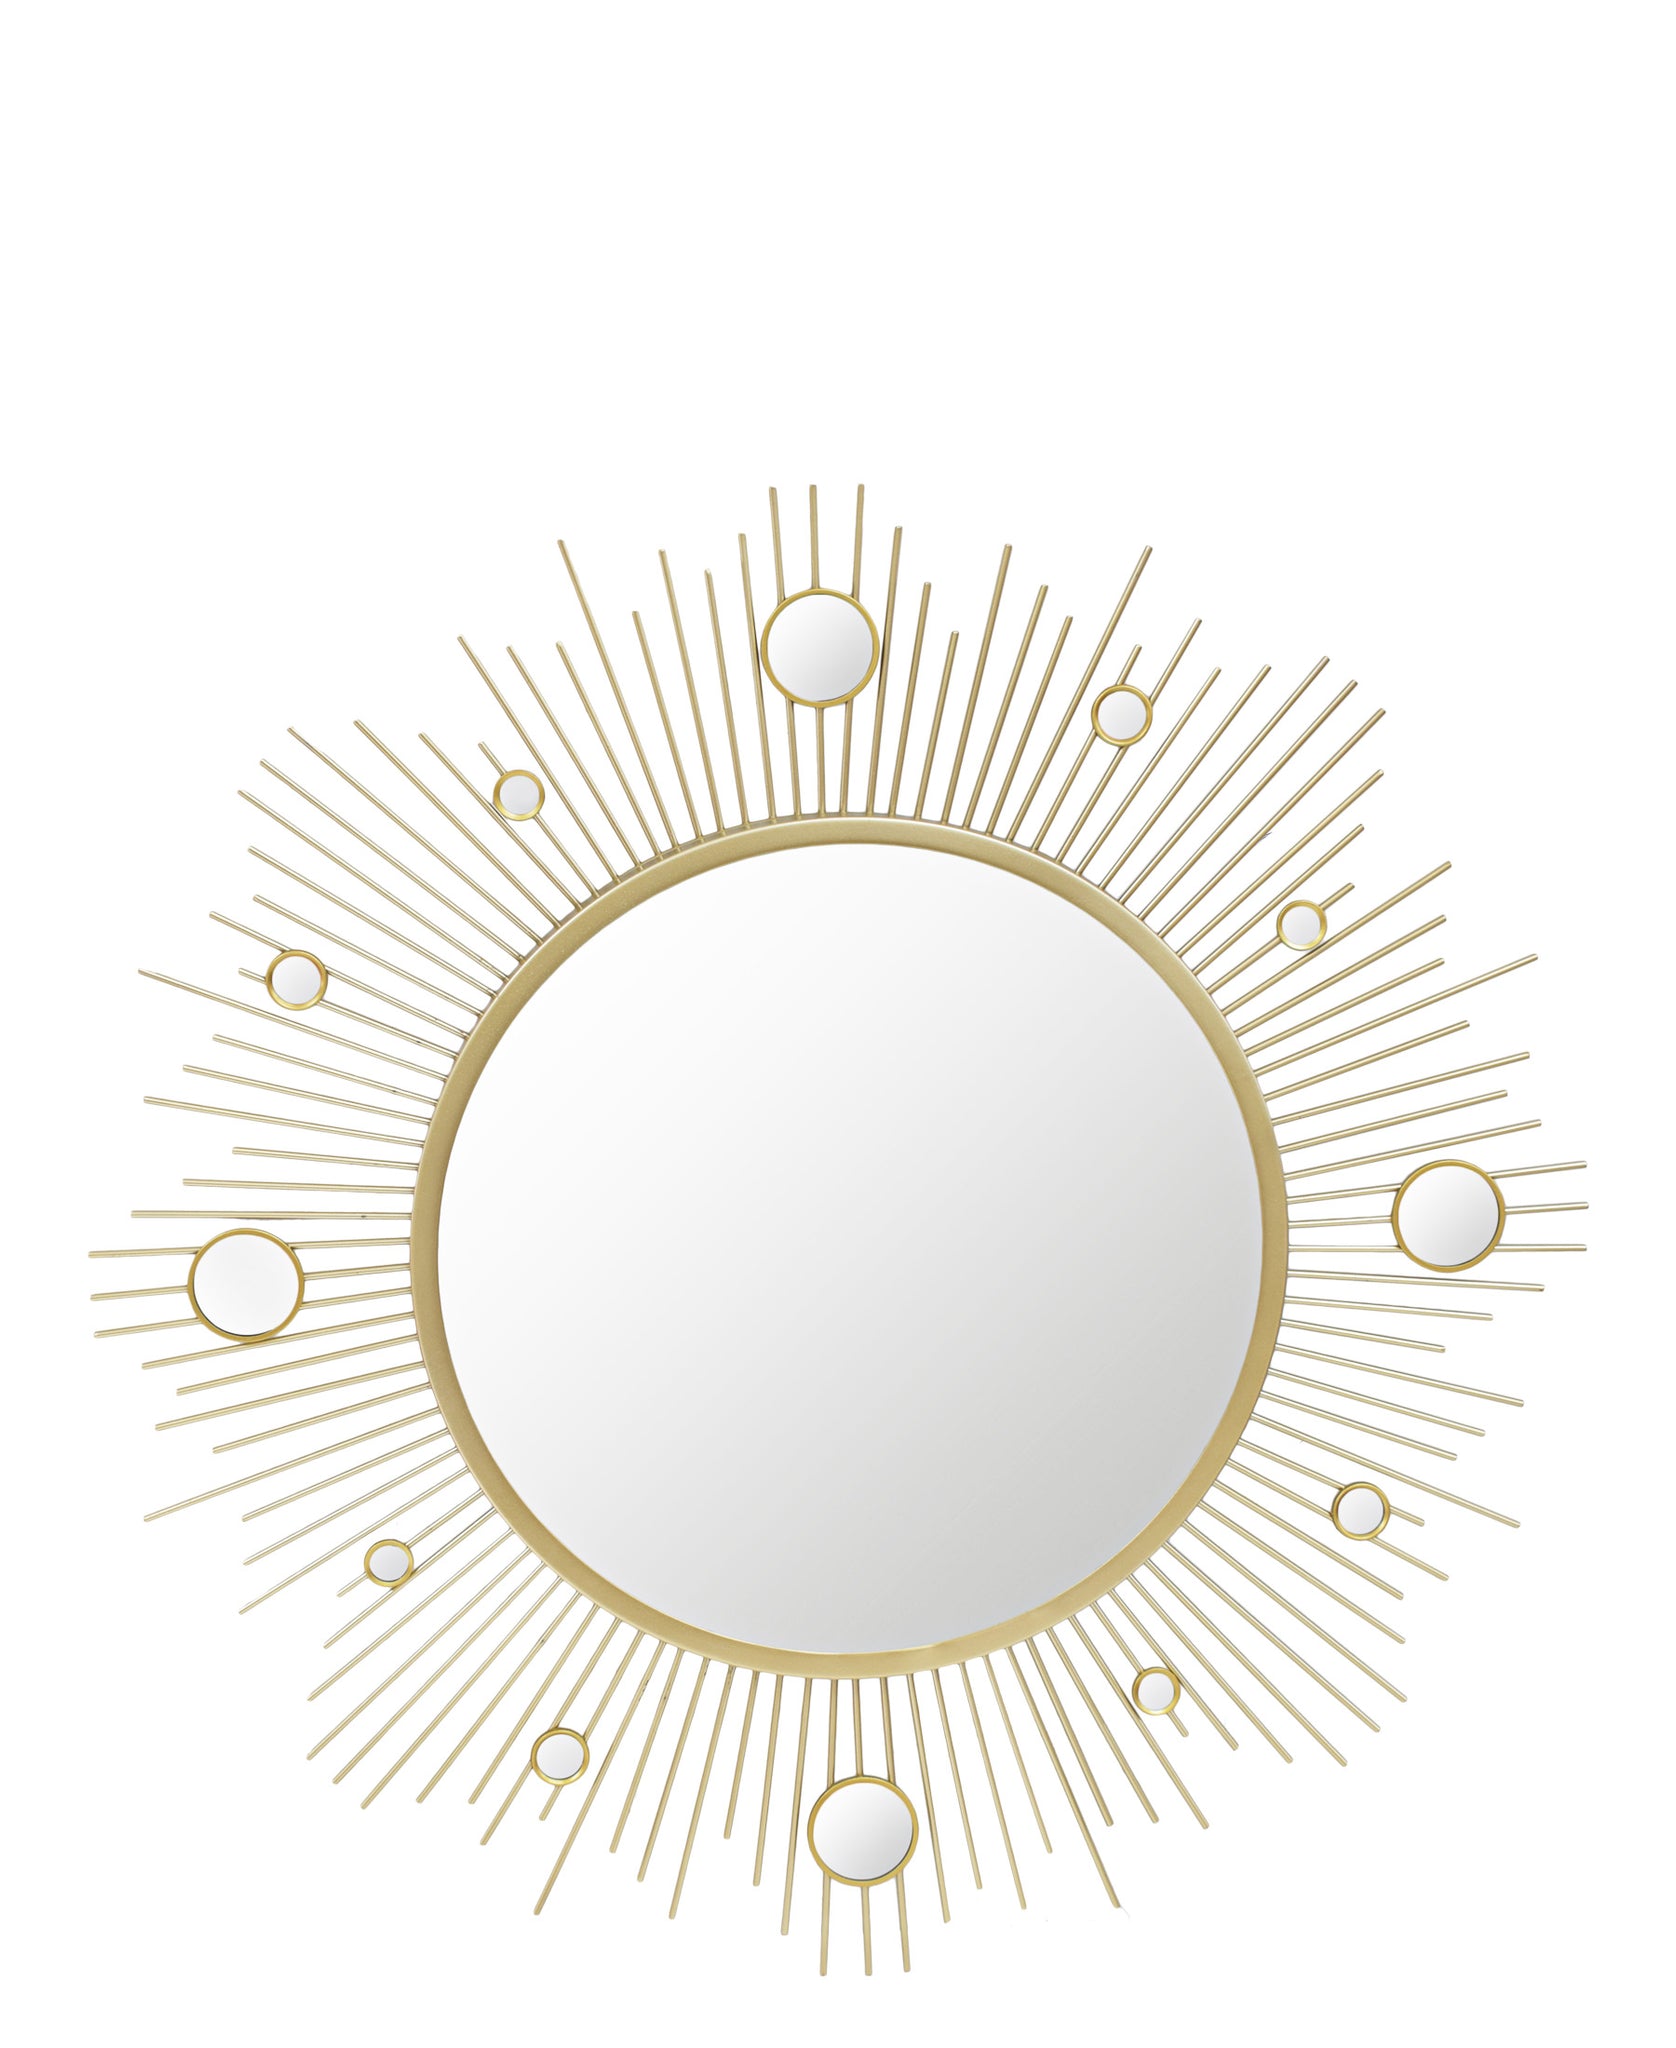 Urban Decor Orbit Round Mirror 60-65cm - Gold